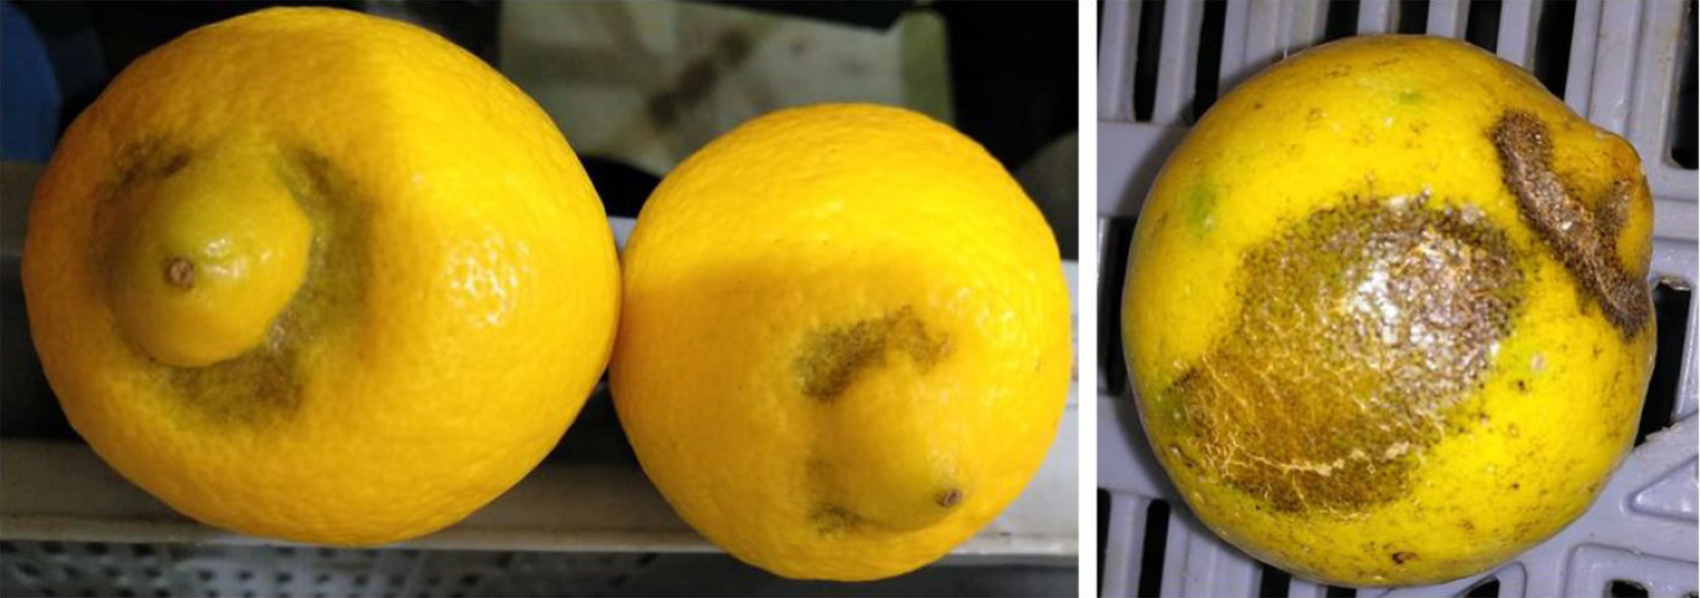 Figura 4. Limones con dao esttico ocasionado por T. urticae en la zona estilar (izquierda) y la zona de unin entre frutos (derecha). Autora: E...